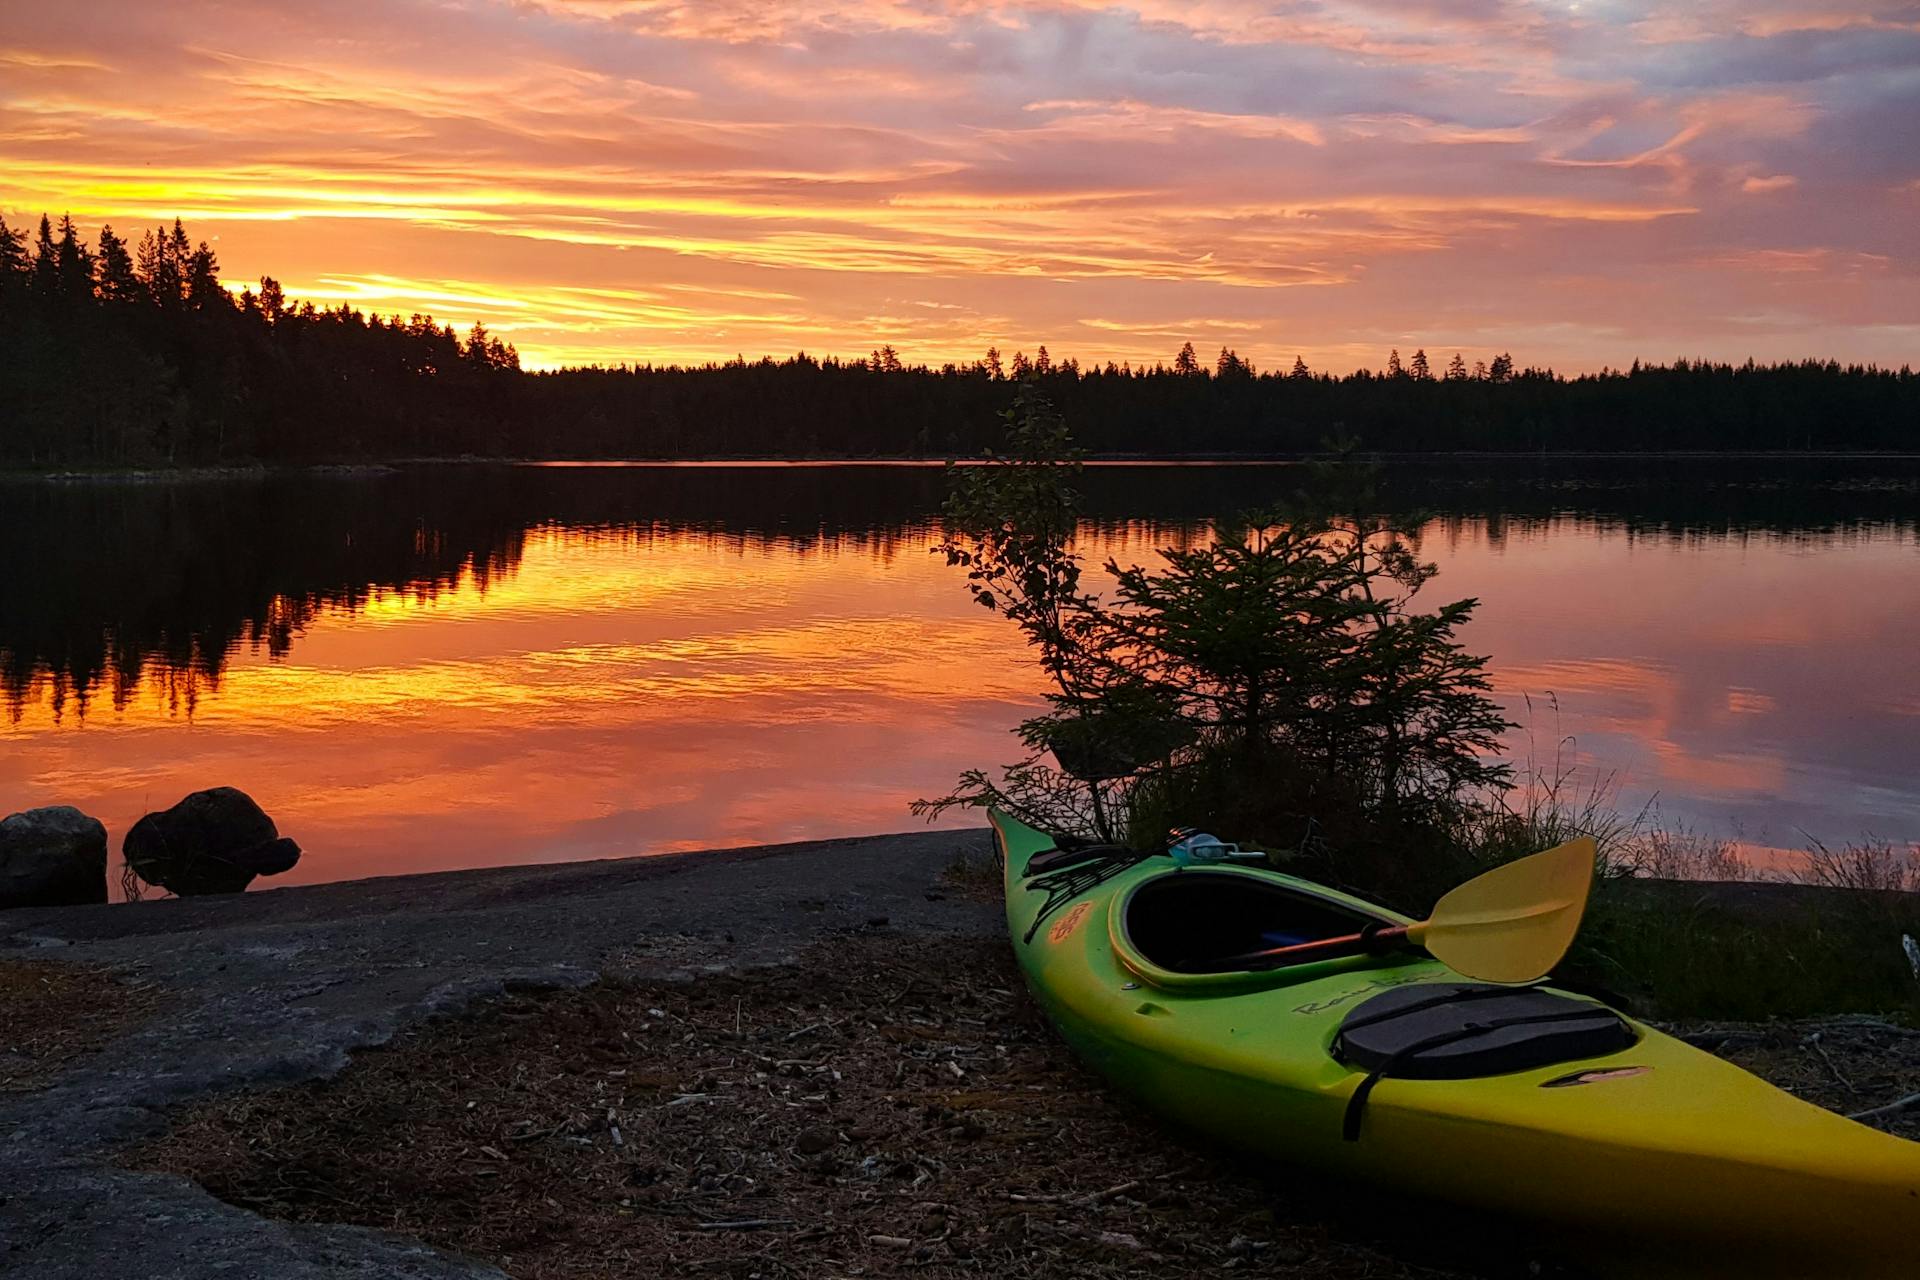 Il kayak giace sulla riva di un lago durante un bellissimo tramonto nella Riserva Naturale di Malingsbo-Kloten in Svezia.